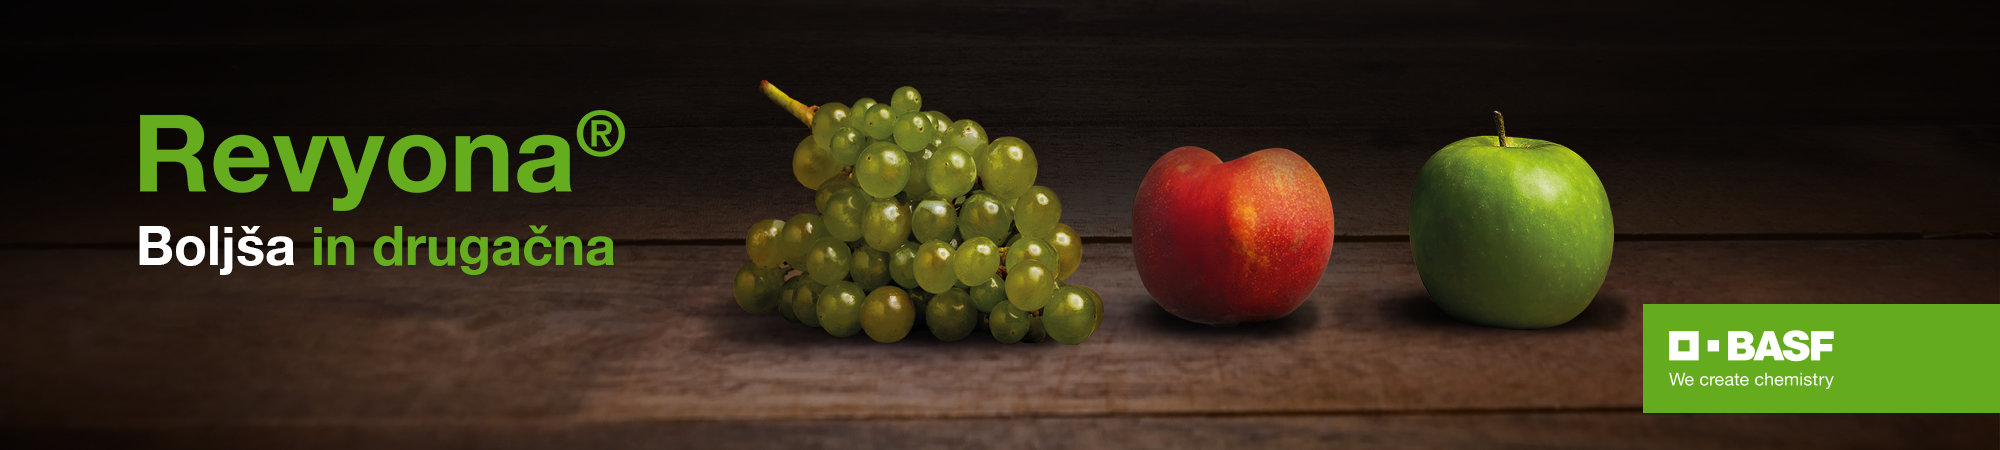 zeleno-grozdje-ob-rdečih-jabolkih-simbol-zdravega-sadeja-zaradi-uporabe-fungicida-revyona